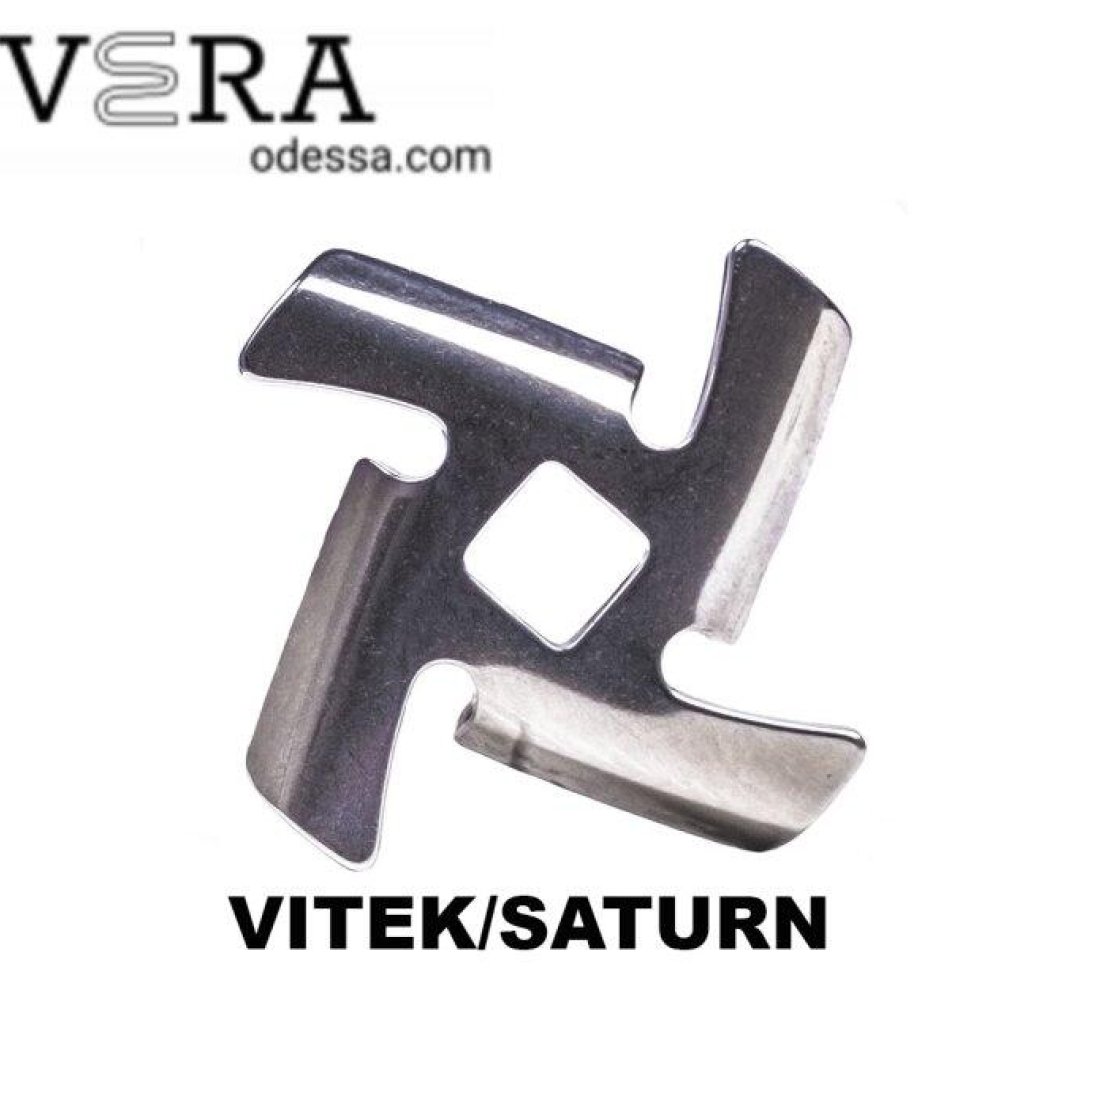 Купити ножі для м'ясорубок Vitek|Saturn оптом, фотографія 2